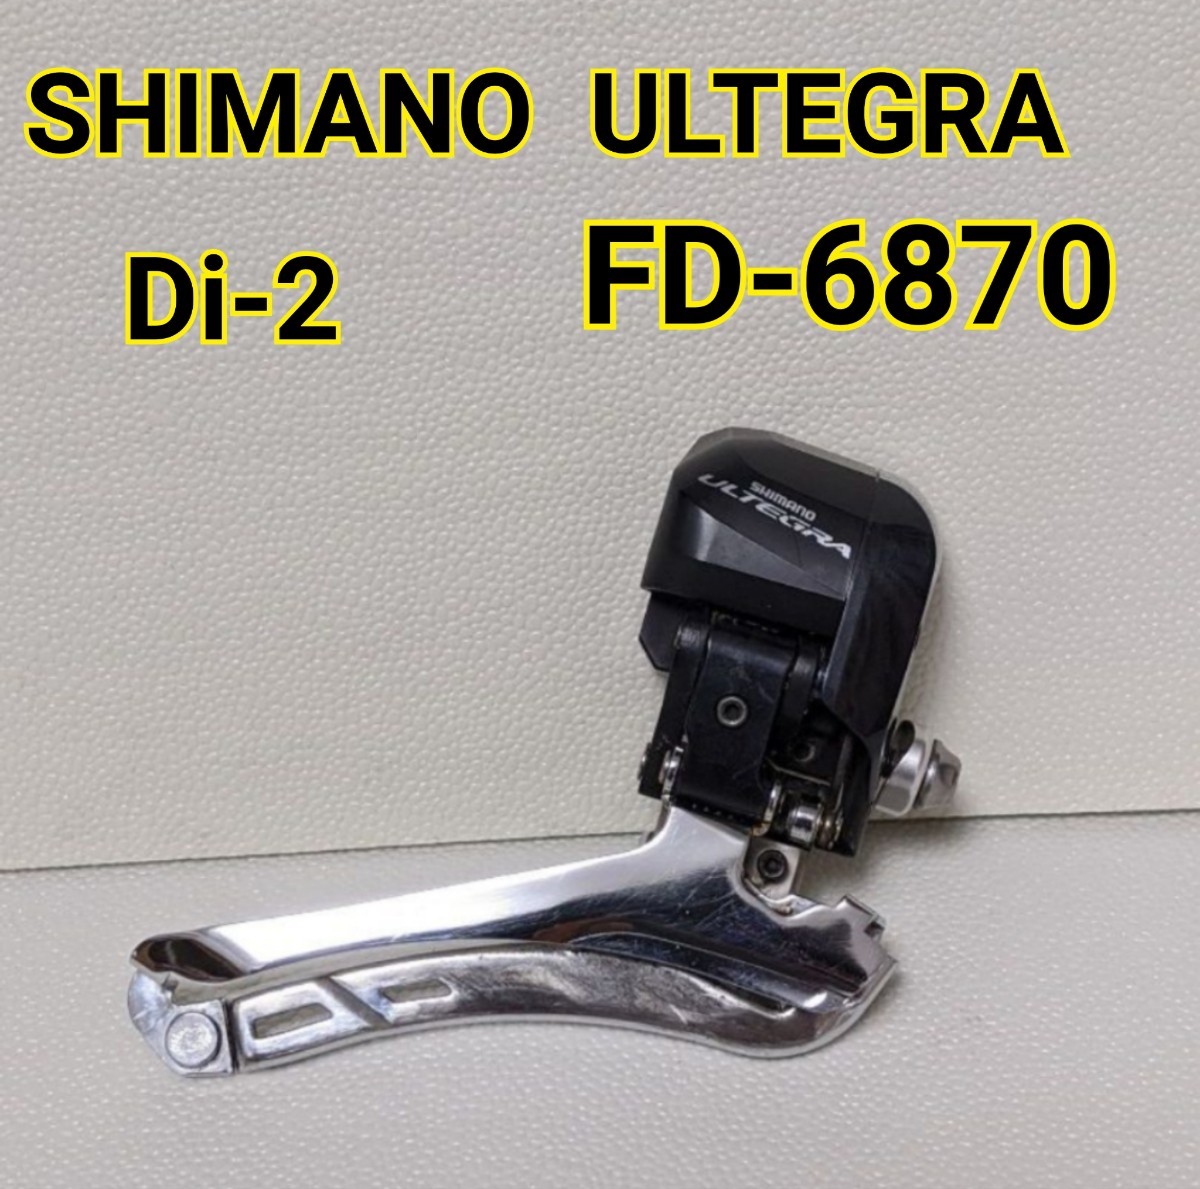 流行 SHIMANO シマノ ULTEGRA FD-6870 フロントディレイラー ...